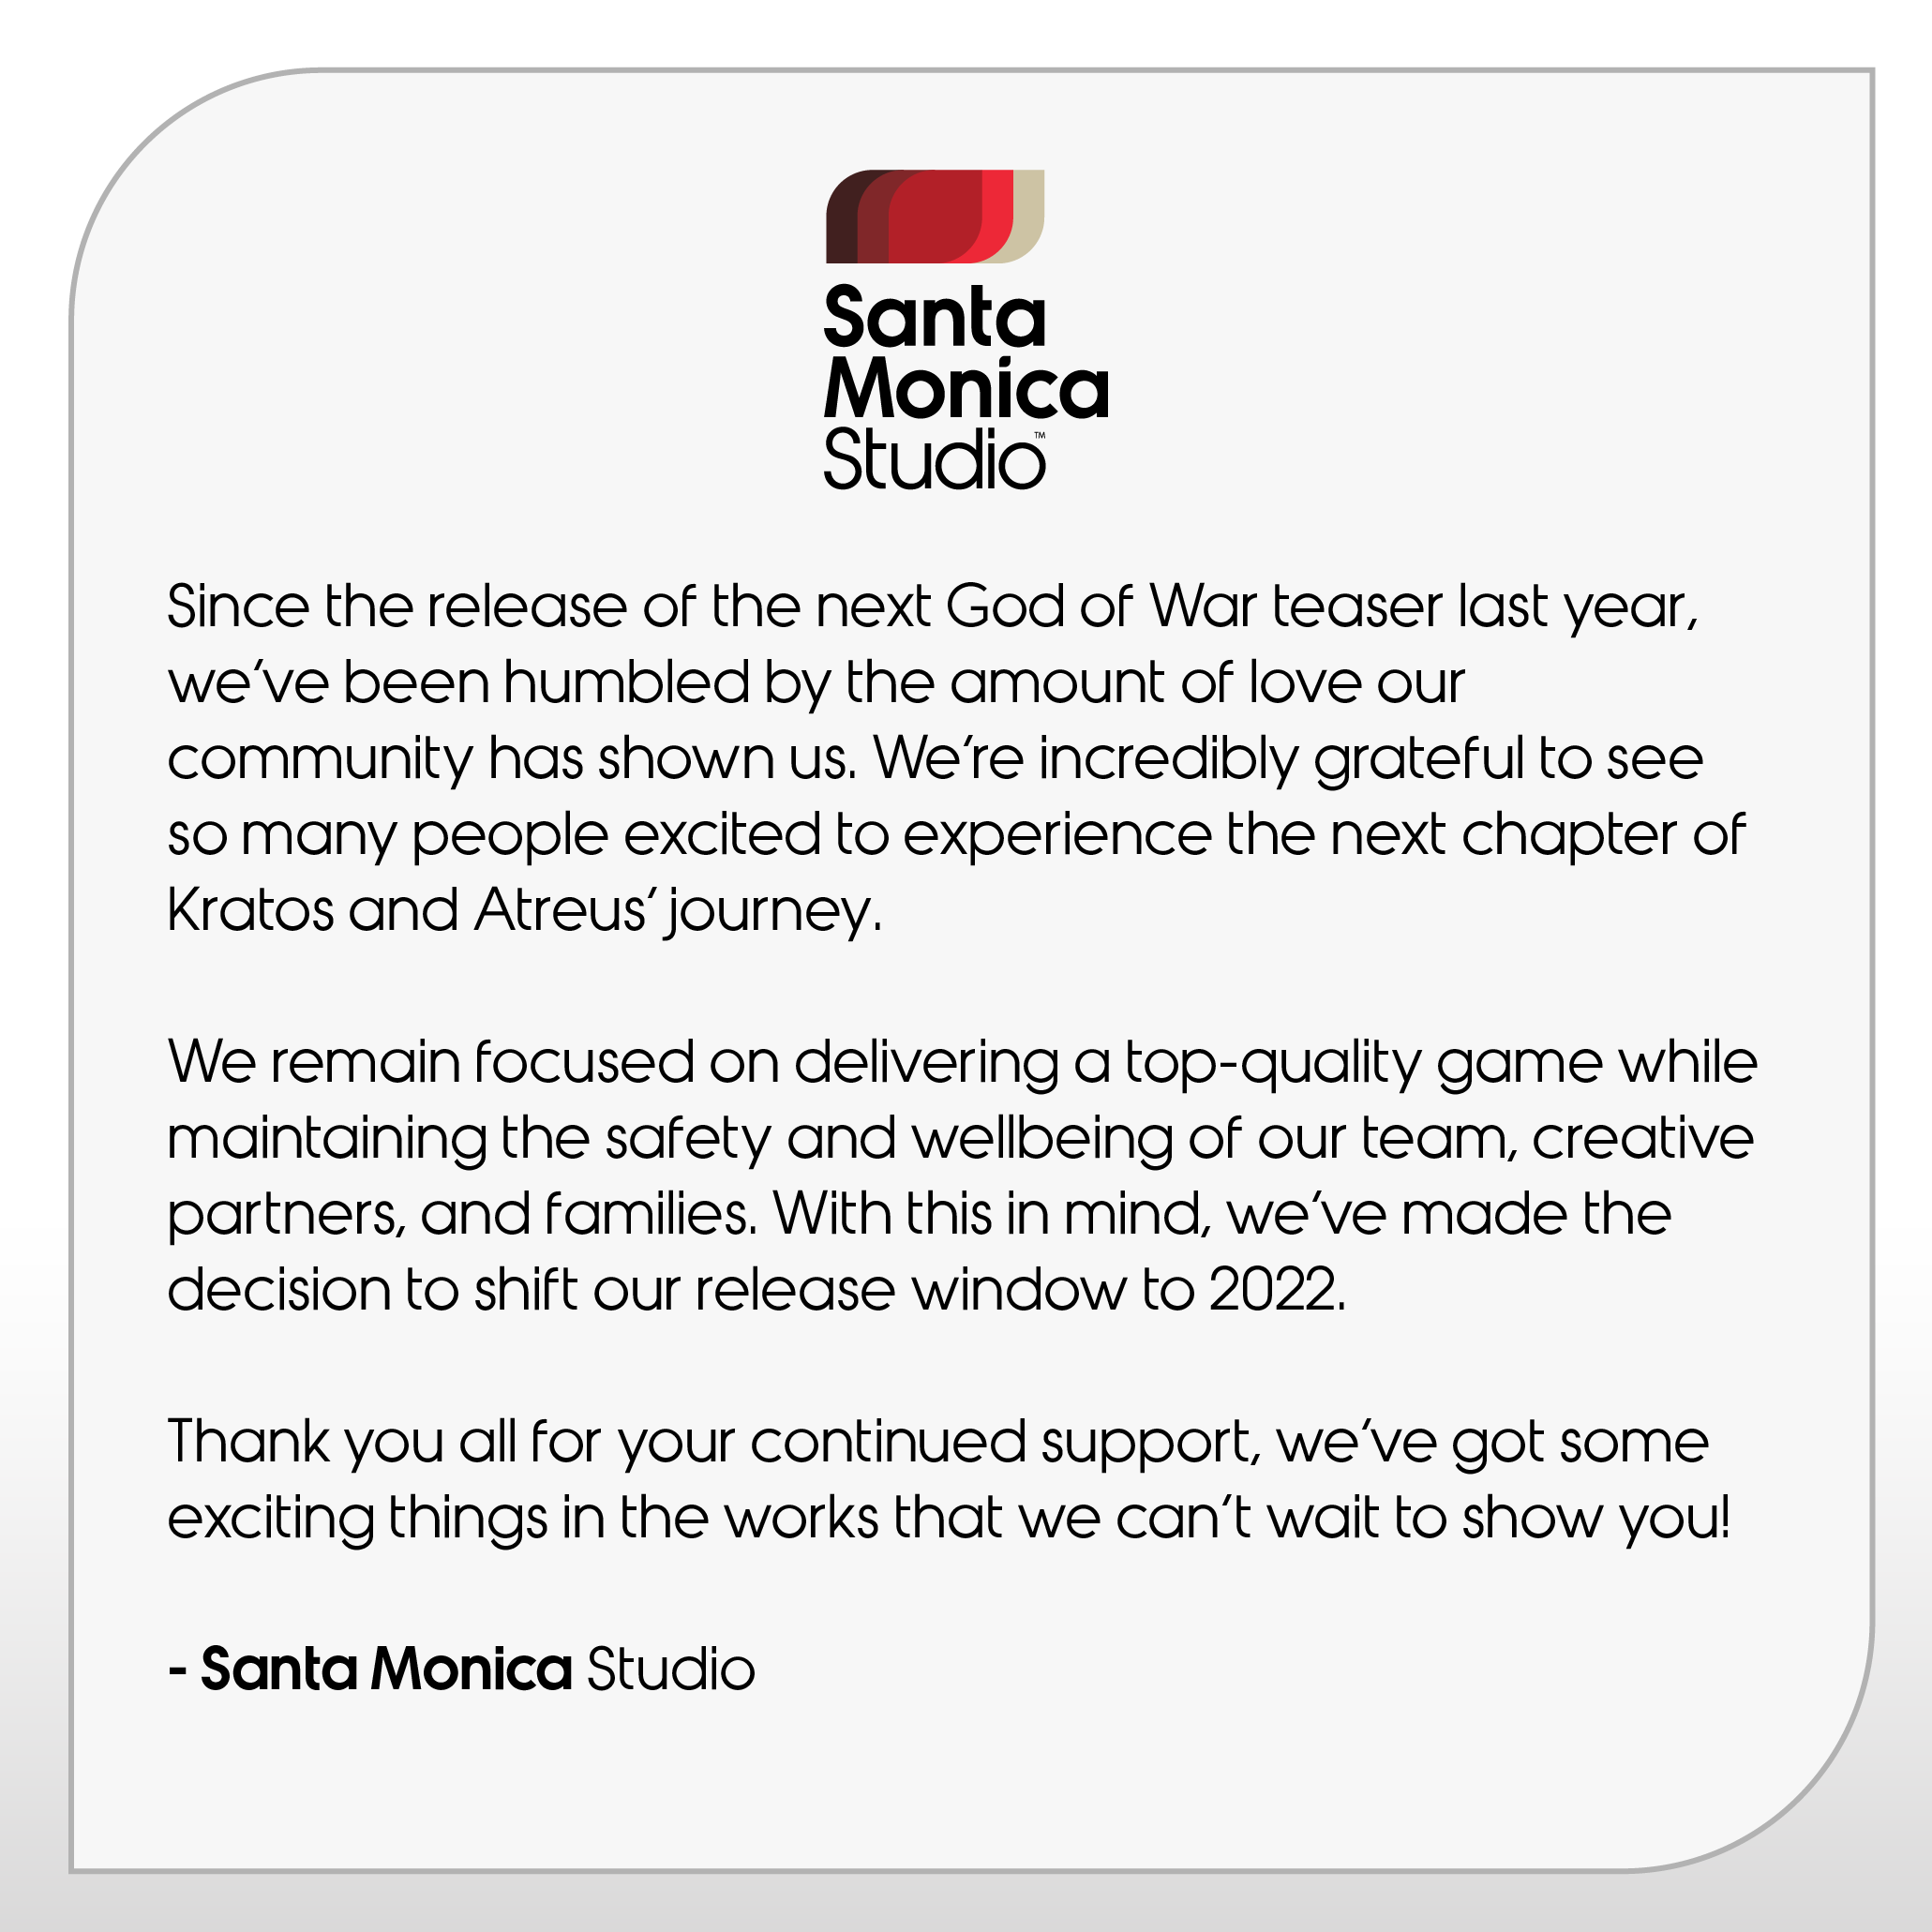 Santa Monica Studion ilmoitus, että seuraava God of War siirtää julkaisuikkunansa vuoteen 2022.